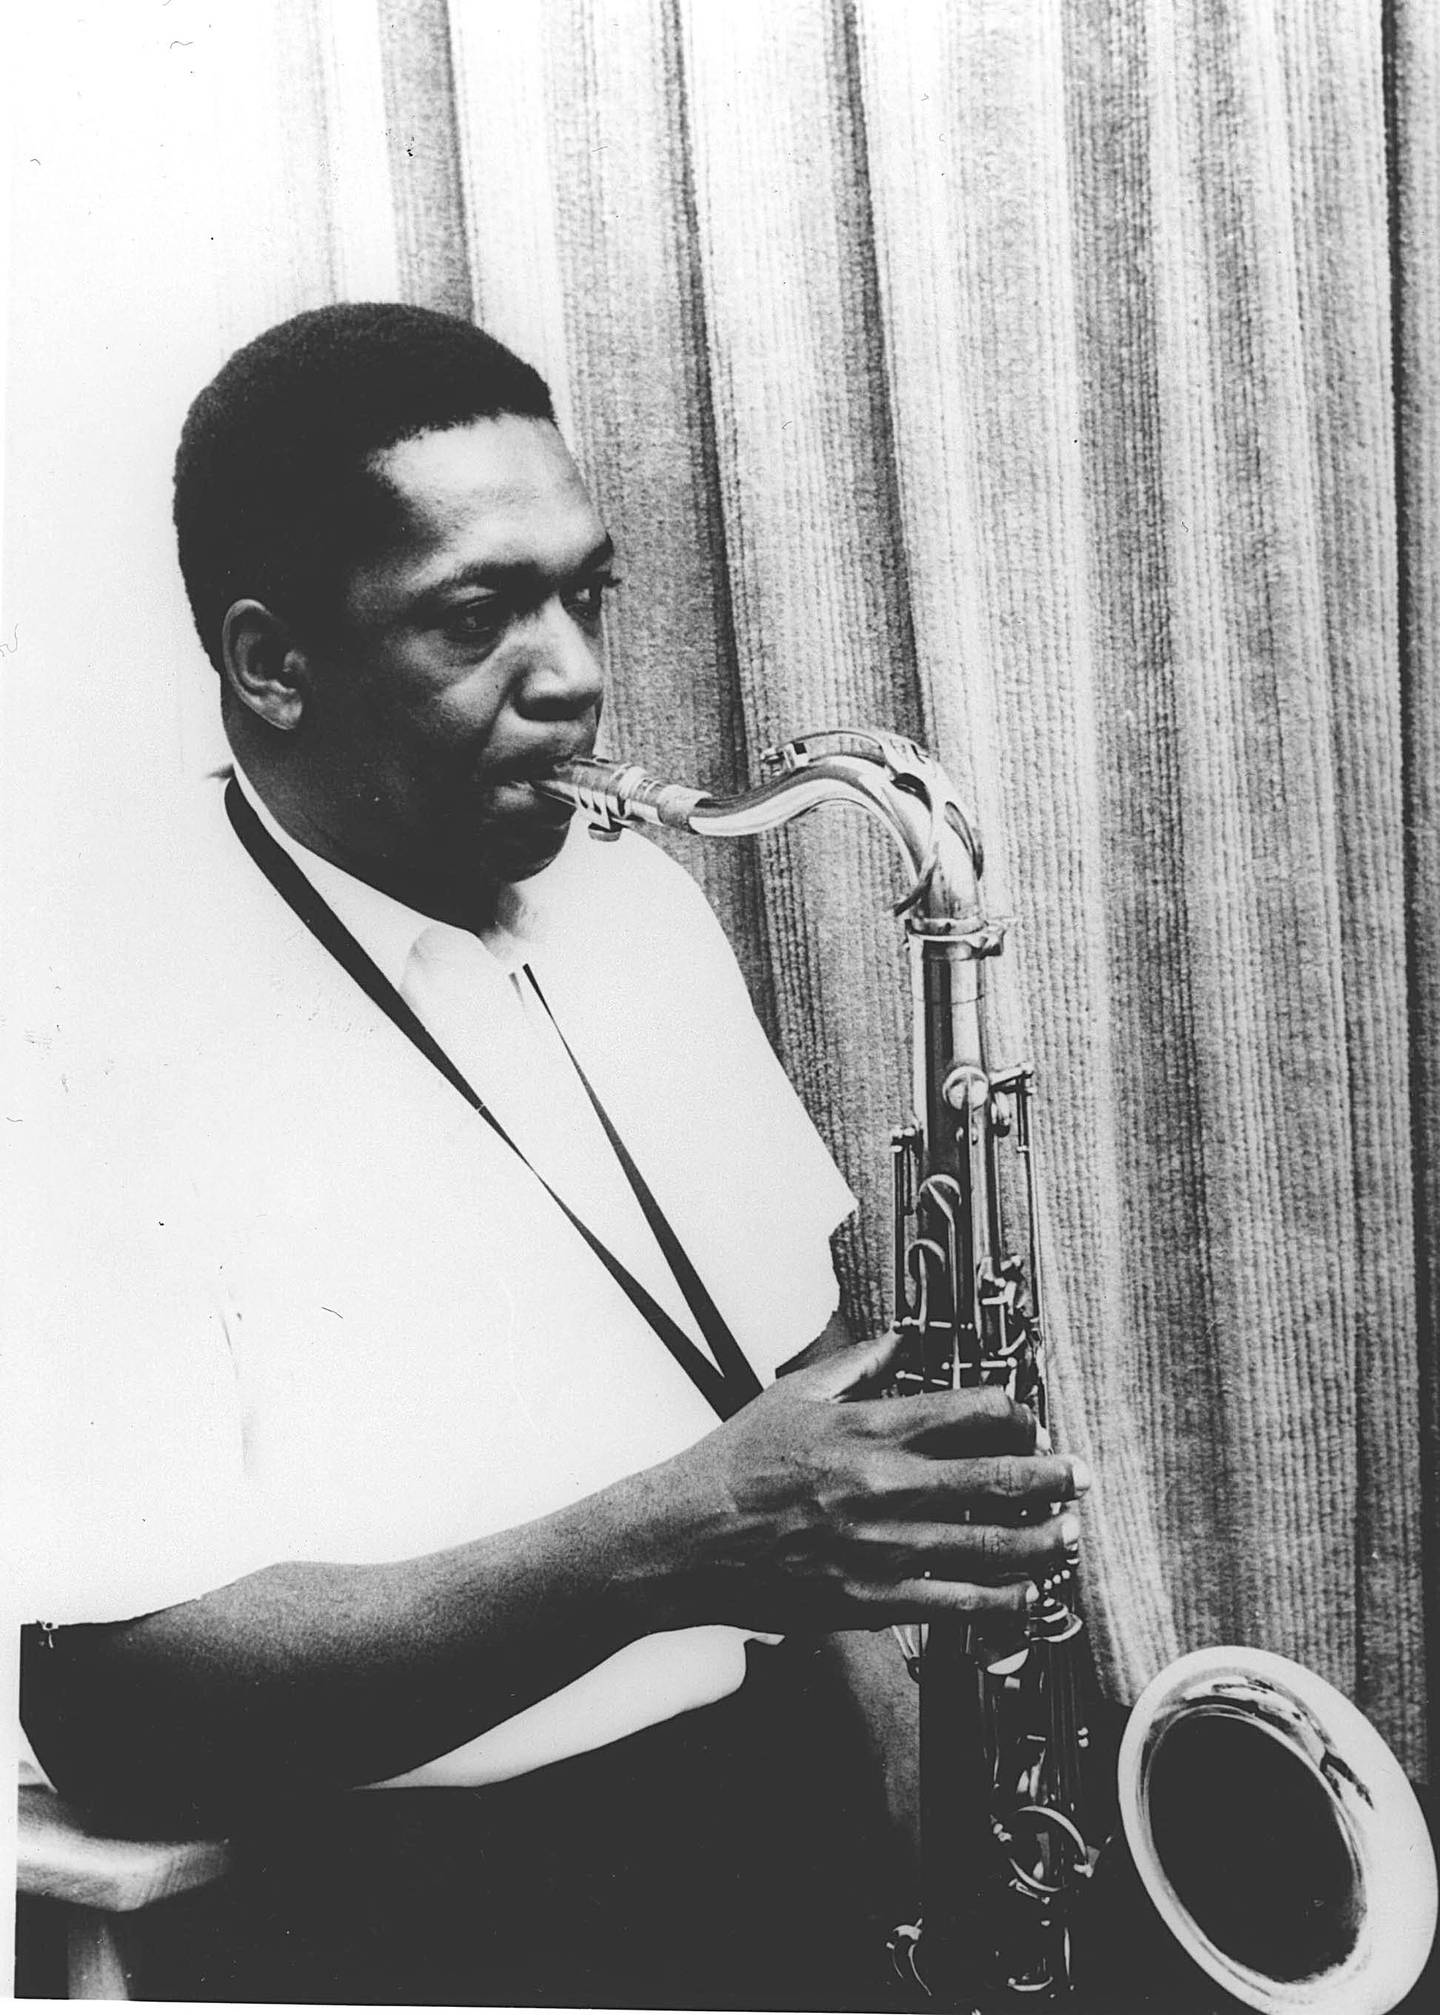 John Coltrane, saksofonist. Jazz.
Dato ukjent.